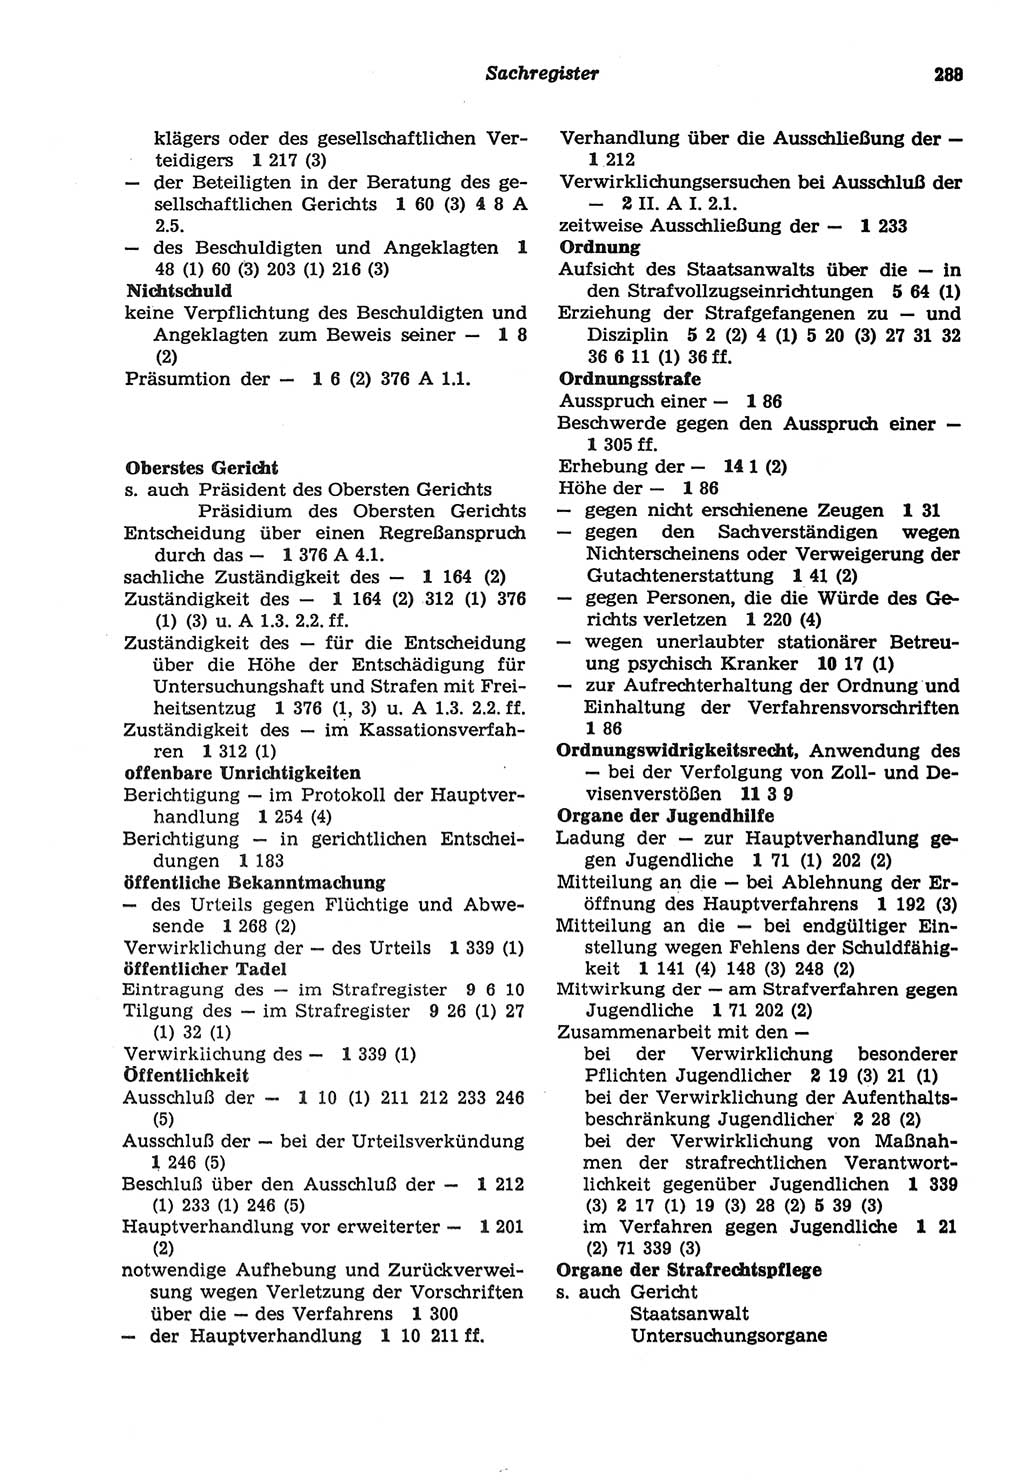 Strafprozeßordnung (StPO) der Deutschen Demokratischen Republik (DDR) sowie angrenzende Gesetze und Bestimmungen 1977, Seite 288 (StPO DDR Ges. Best. 1977, S. 288)